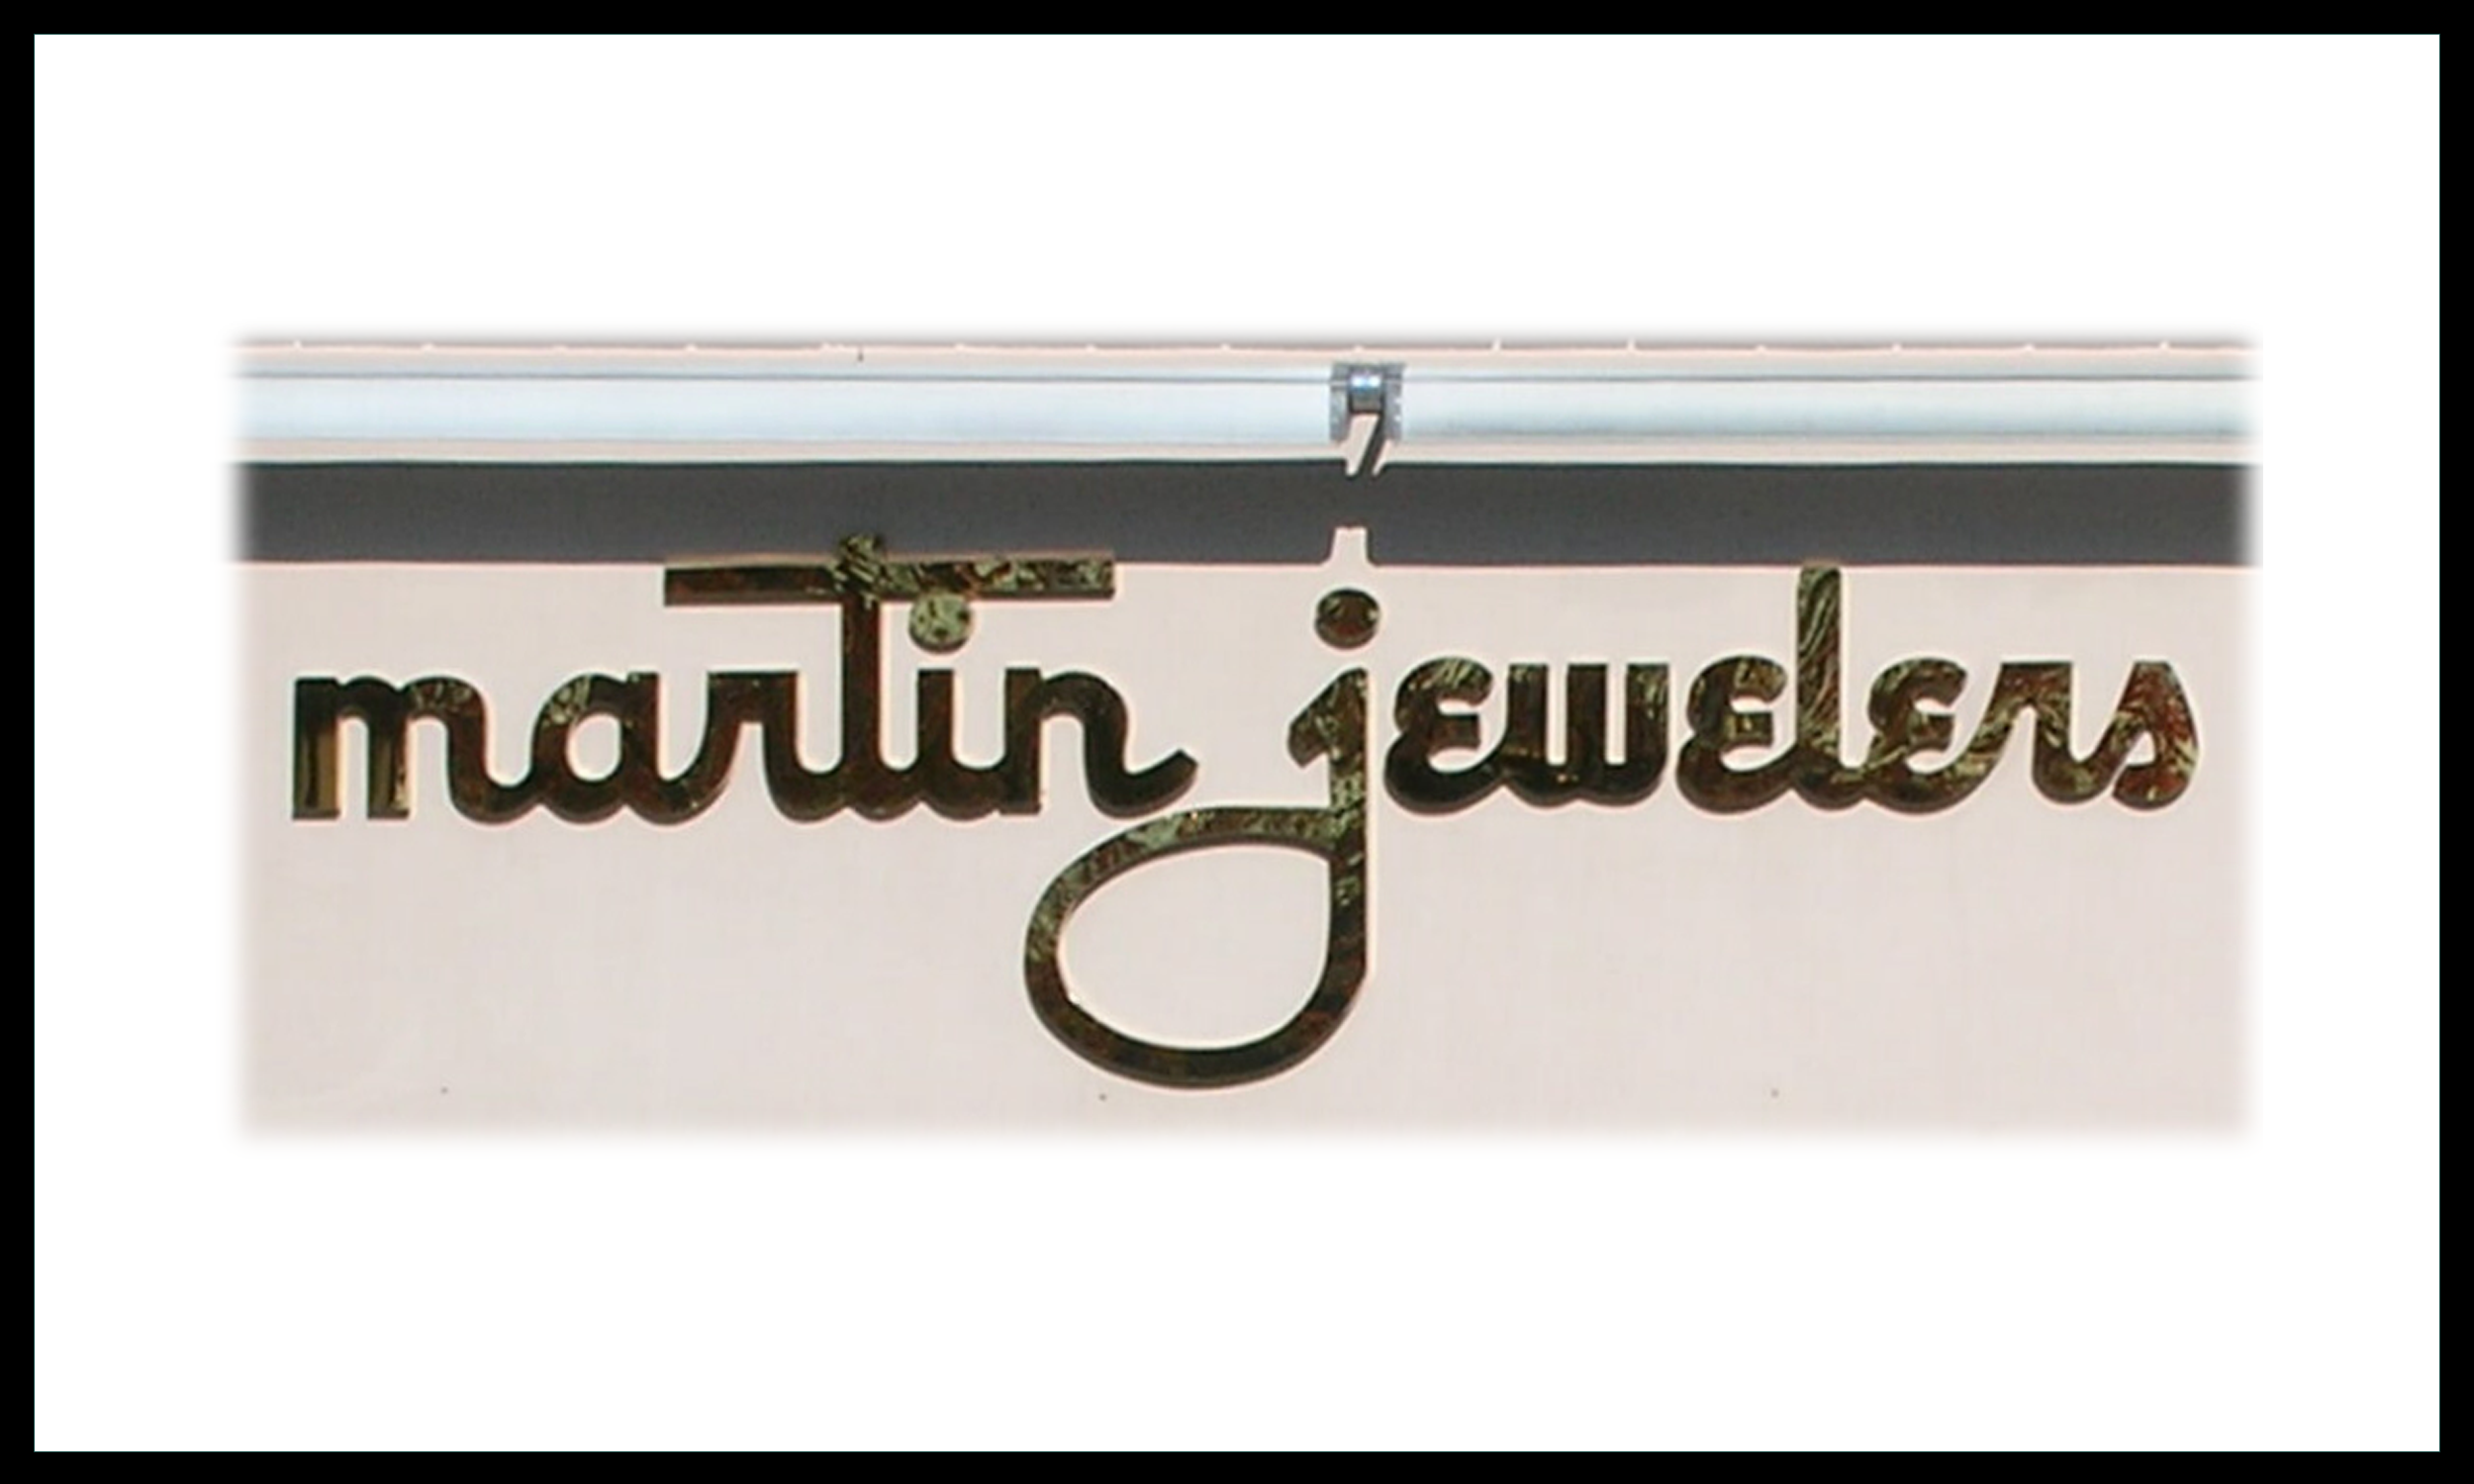 Martin Jewelers